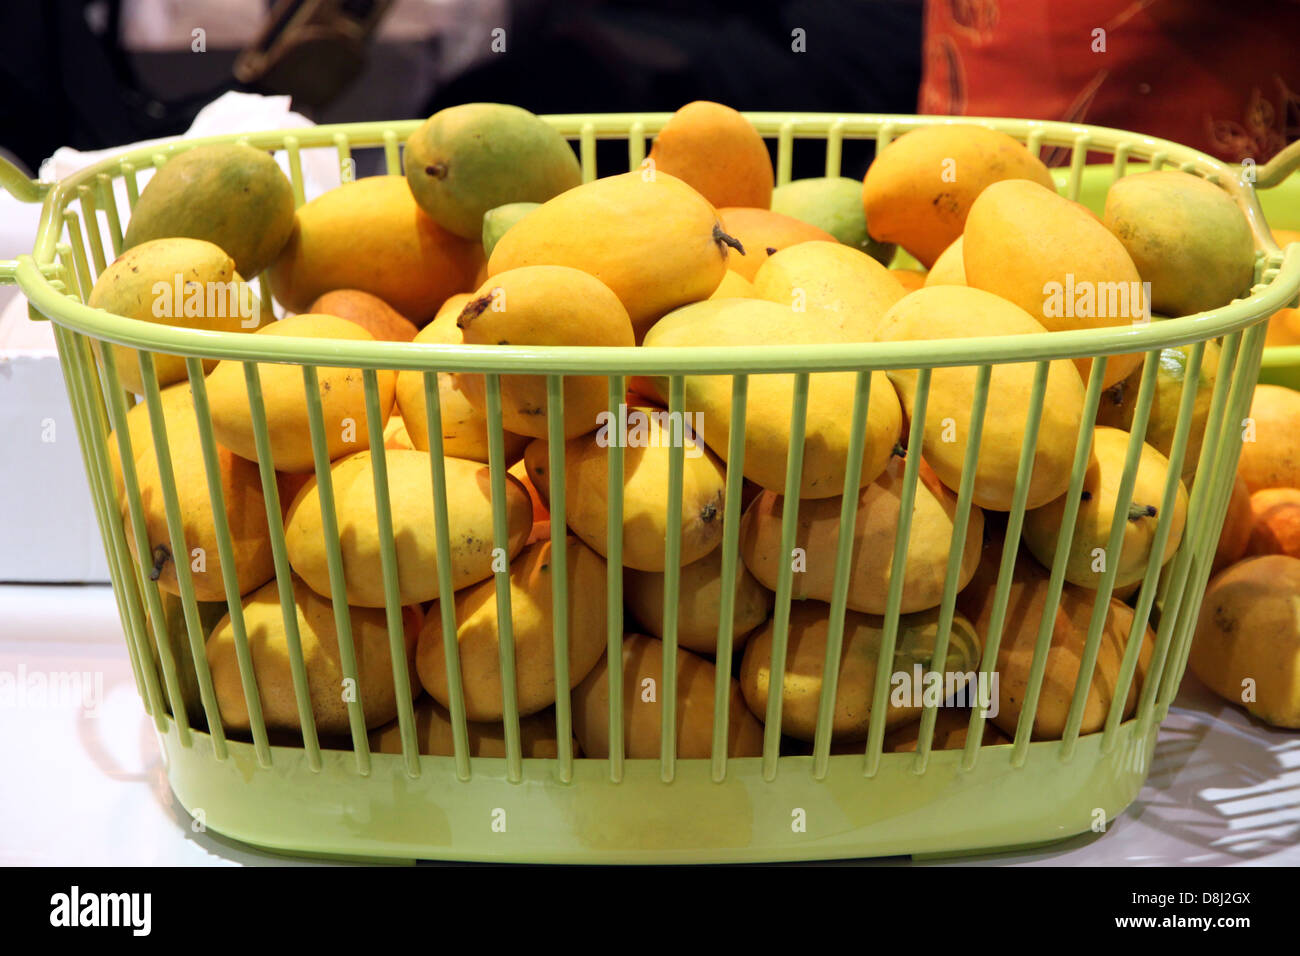 Eine Reife Mango in den grünen Korb legen sie eine gelbe Farbe. Stockfoto